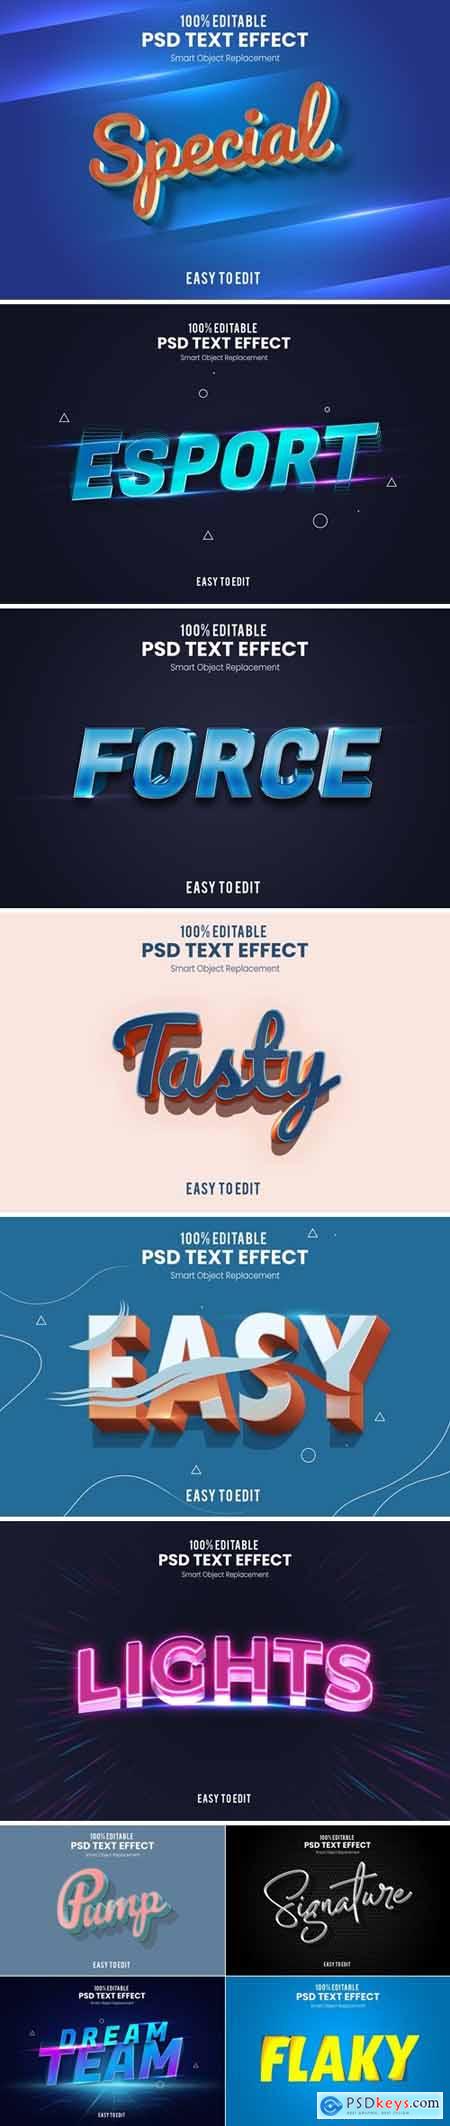 3D text Effect PSD Bundle